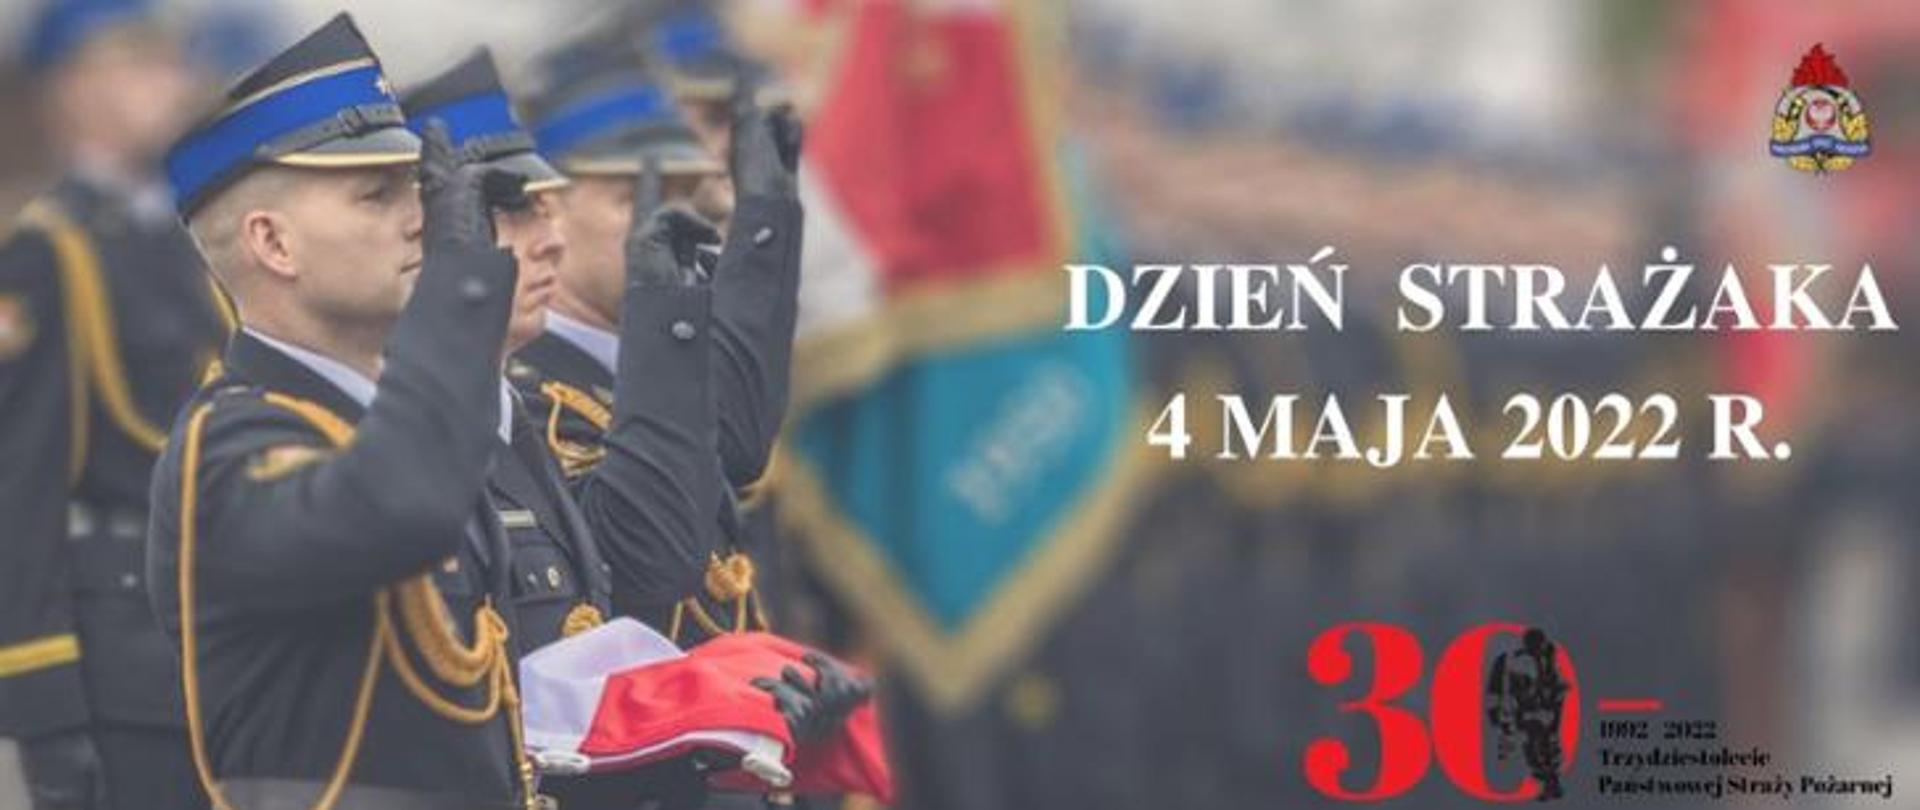 Strażacy w mundurach wyjściowych stoją prawym bokiem w rzędzie, salutują. jeden z nich trzyma złożoną flagę. Widnieje napis: Dzień Strażaka 4 maja 2022 r. logo PSP oraz logo 30-lecia Państwowej Straży Pożarnej.